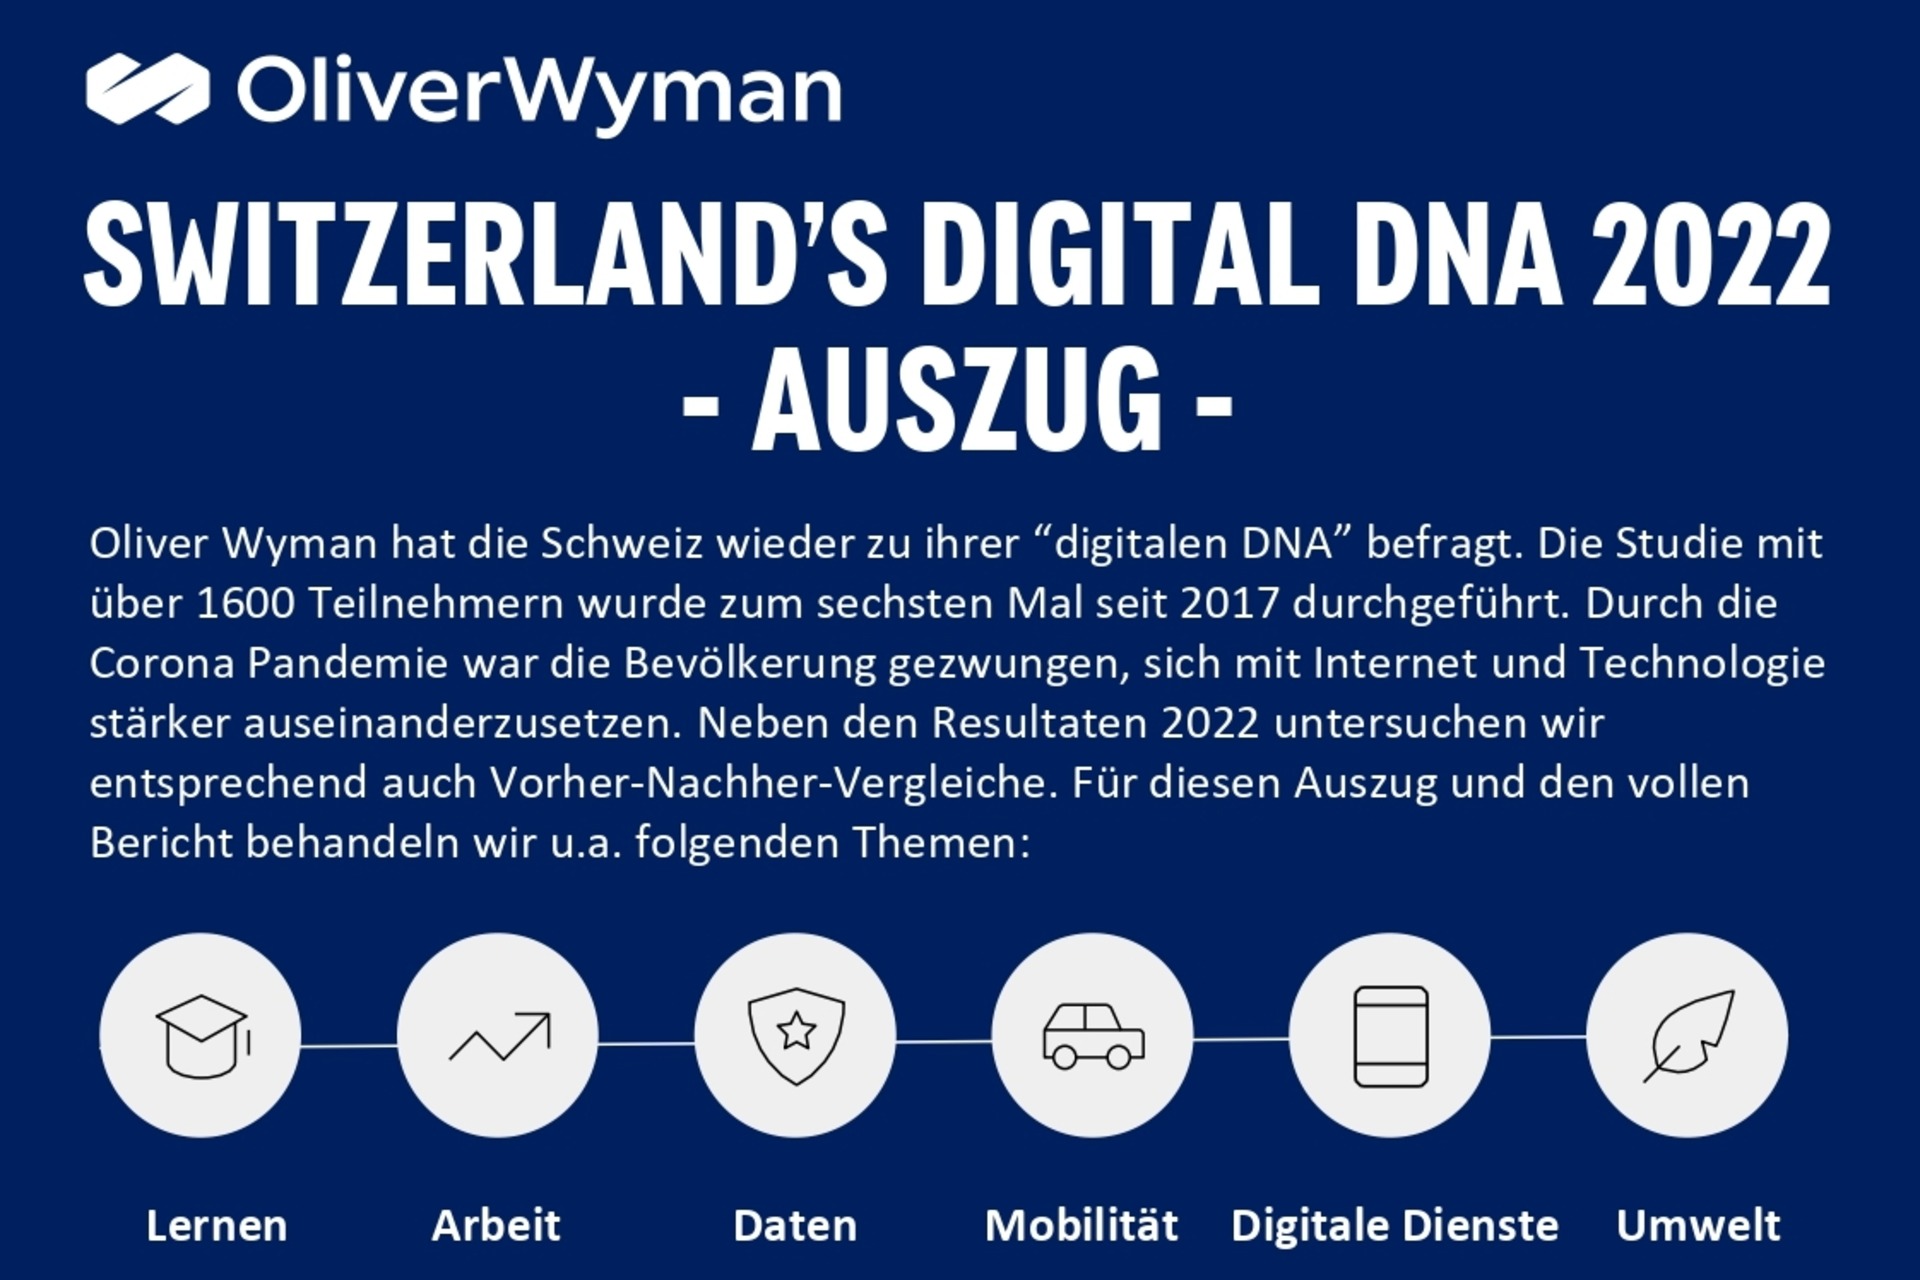 奥纬咨询和 digitalswitzerland 的“瑞士数字 DNA”调查信息图表首页顶部